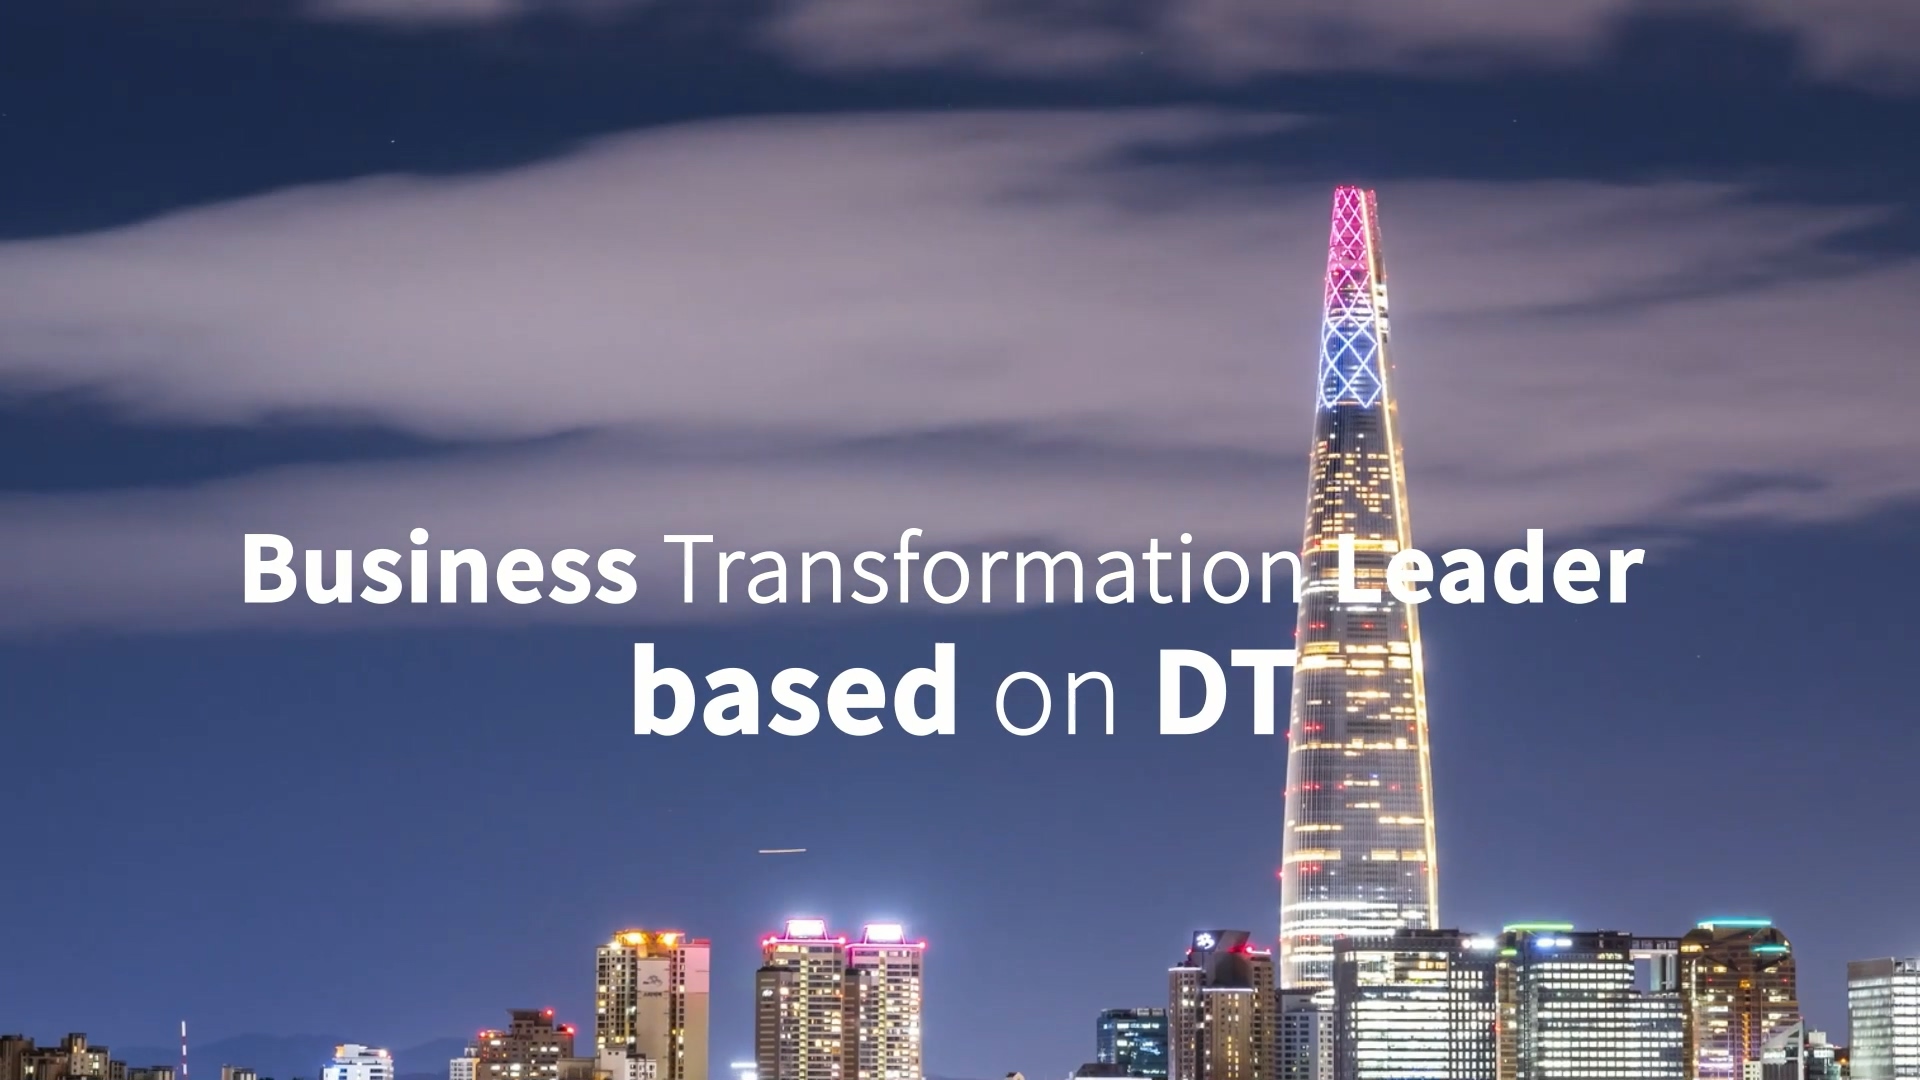 롯데월드타워를 배경으로 Business Transformation Leader based on DT 라는 글자가 표시되고 있다